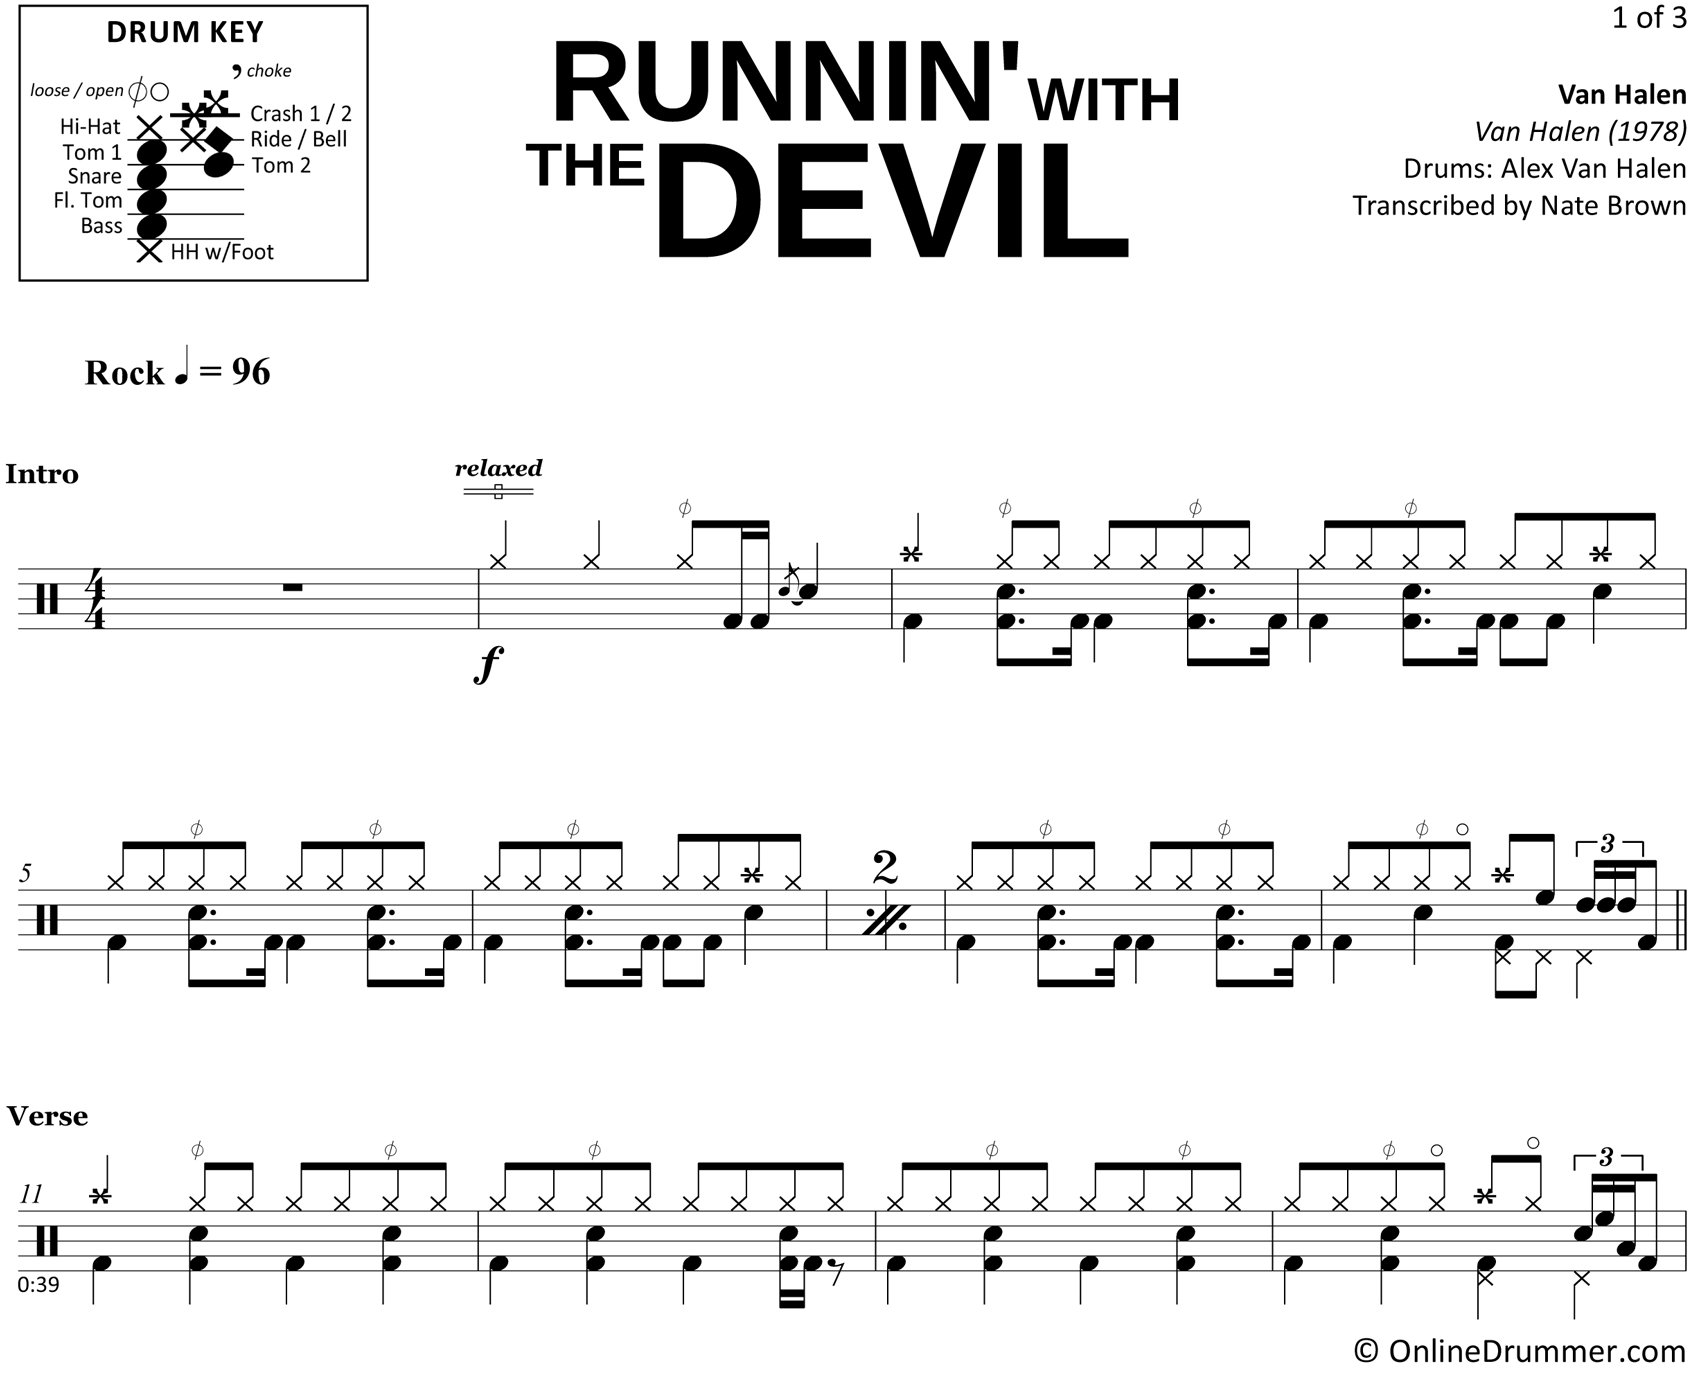 Runnin' with the Devil - Van Halen - Drum Sheet Music